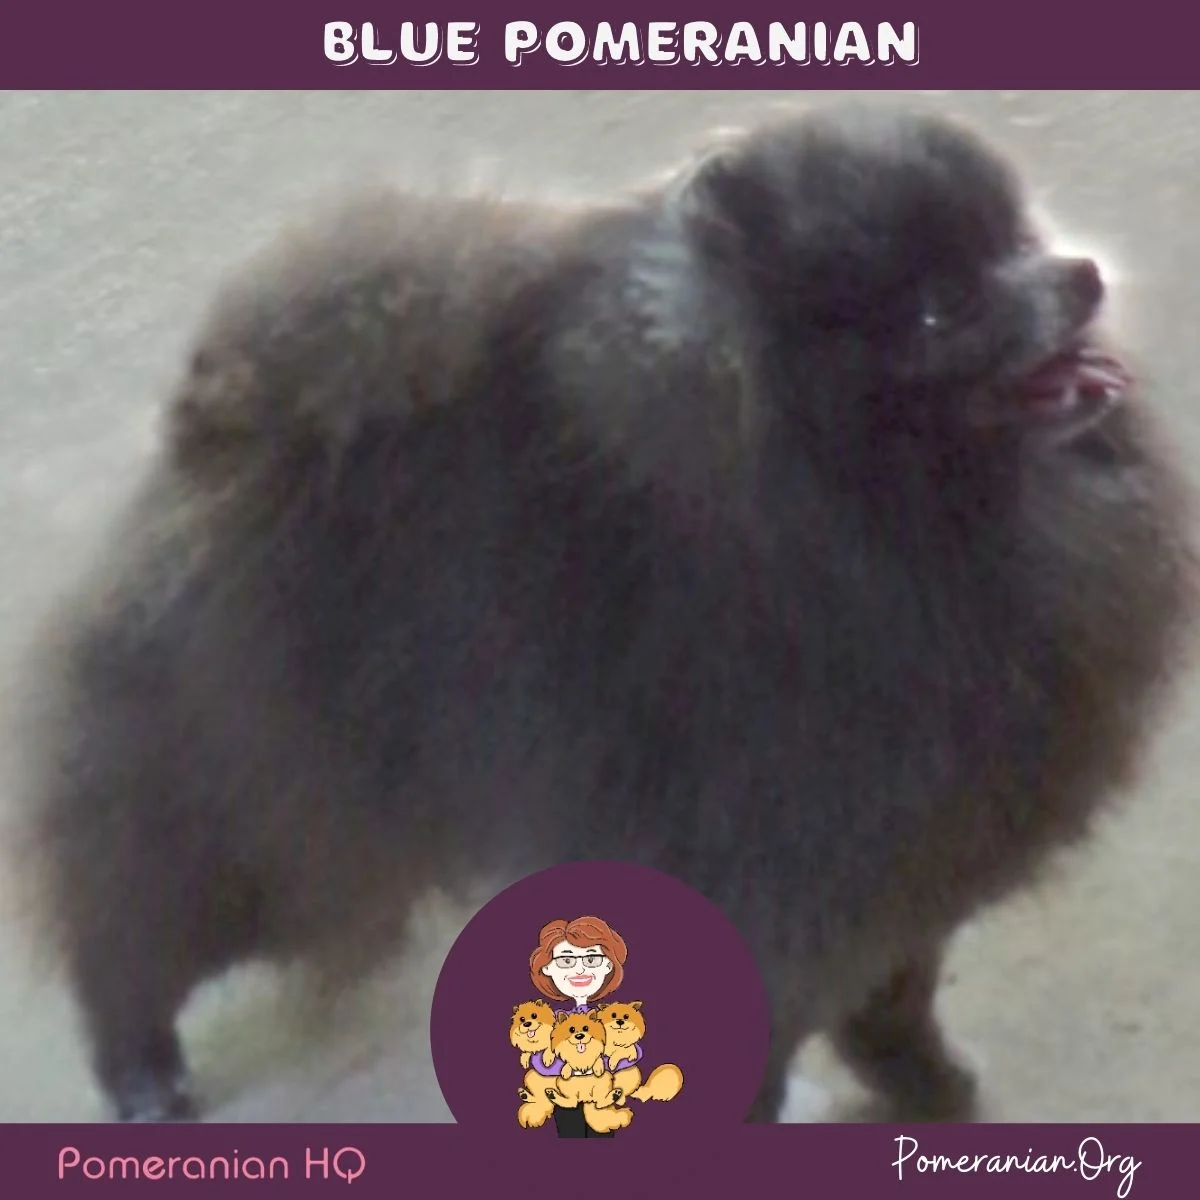 Blue Pomeranian bred by Beau James Pomeranians.